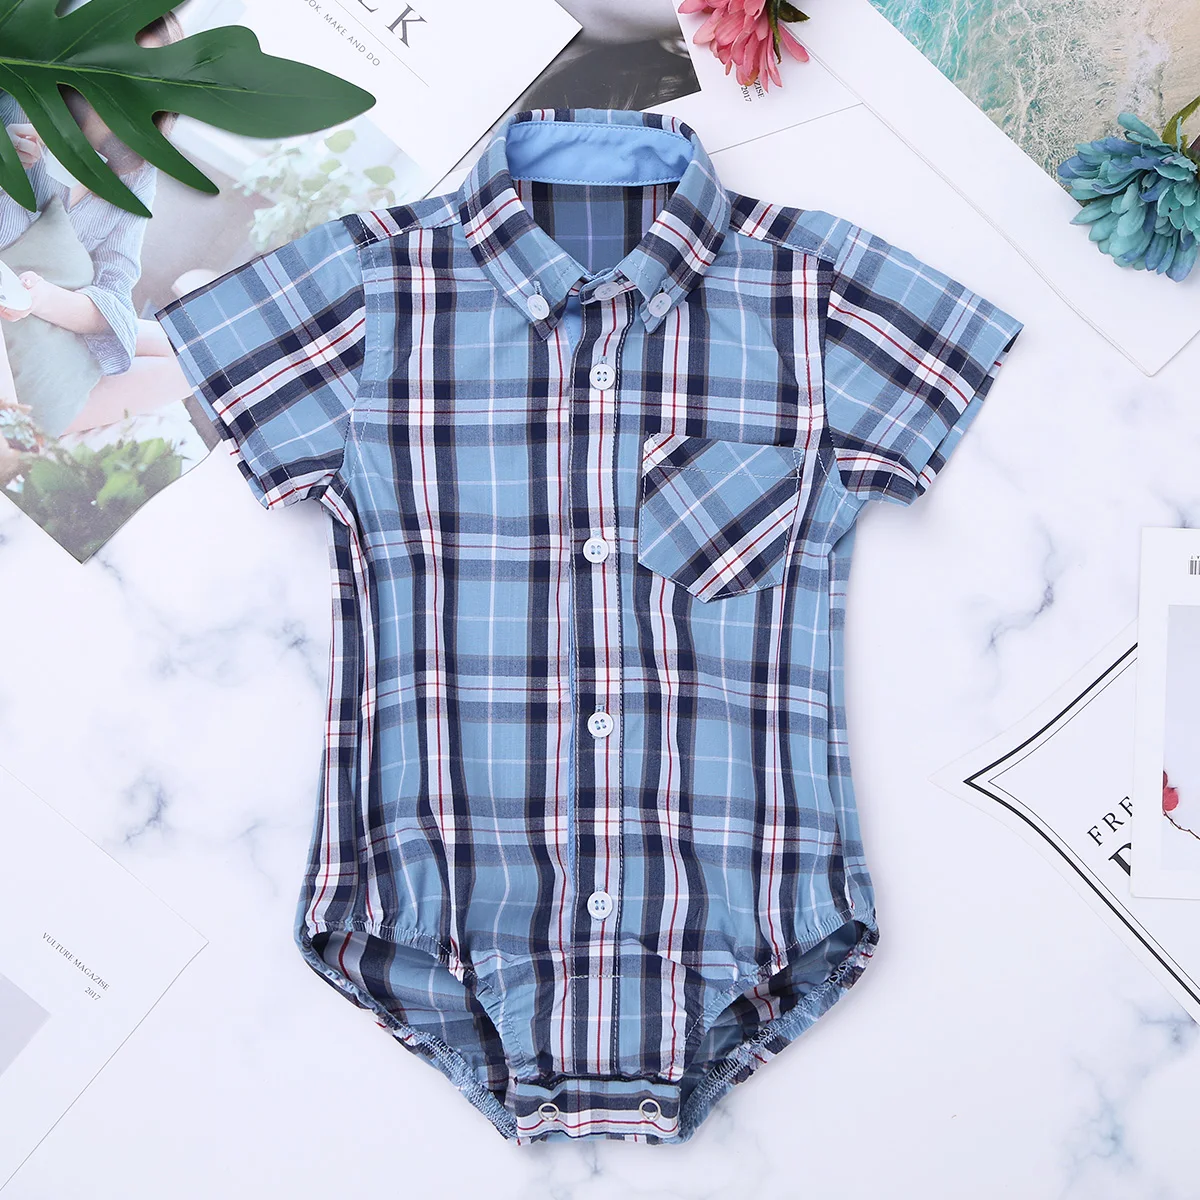 Iiniim Infantil детское боди для мальчиков, одежда рубашка в клетку с короткими рукавами и отворотами, комбинезон для малышей, верхняя одежда для дня рождения